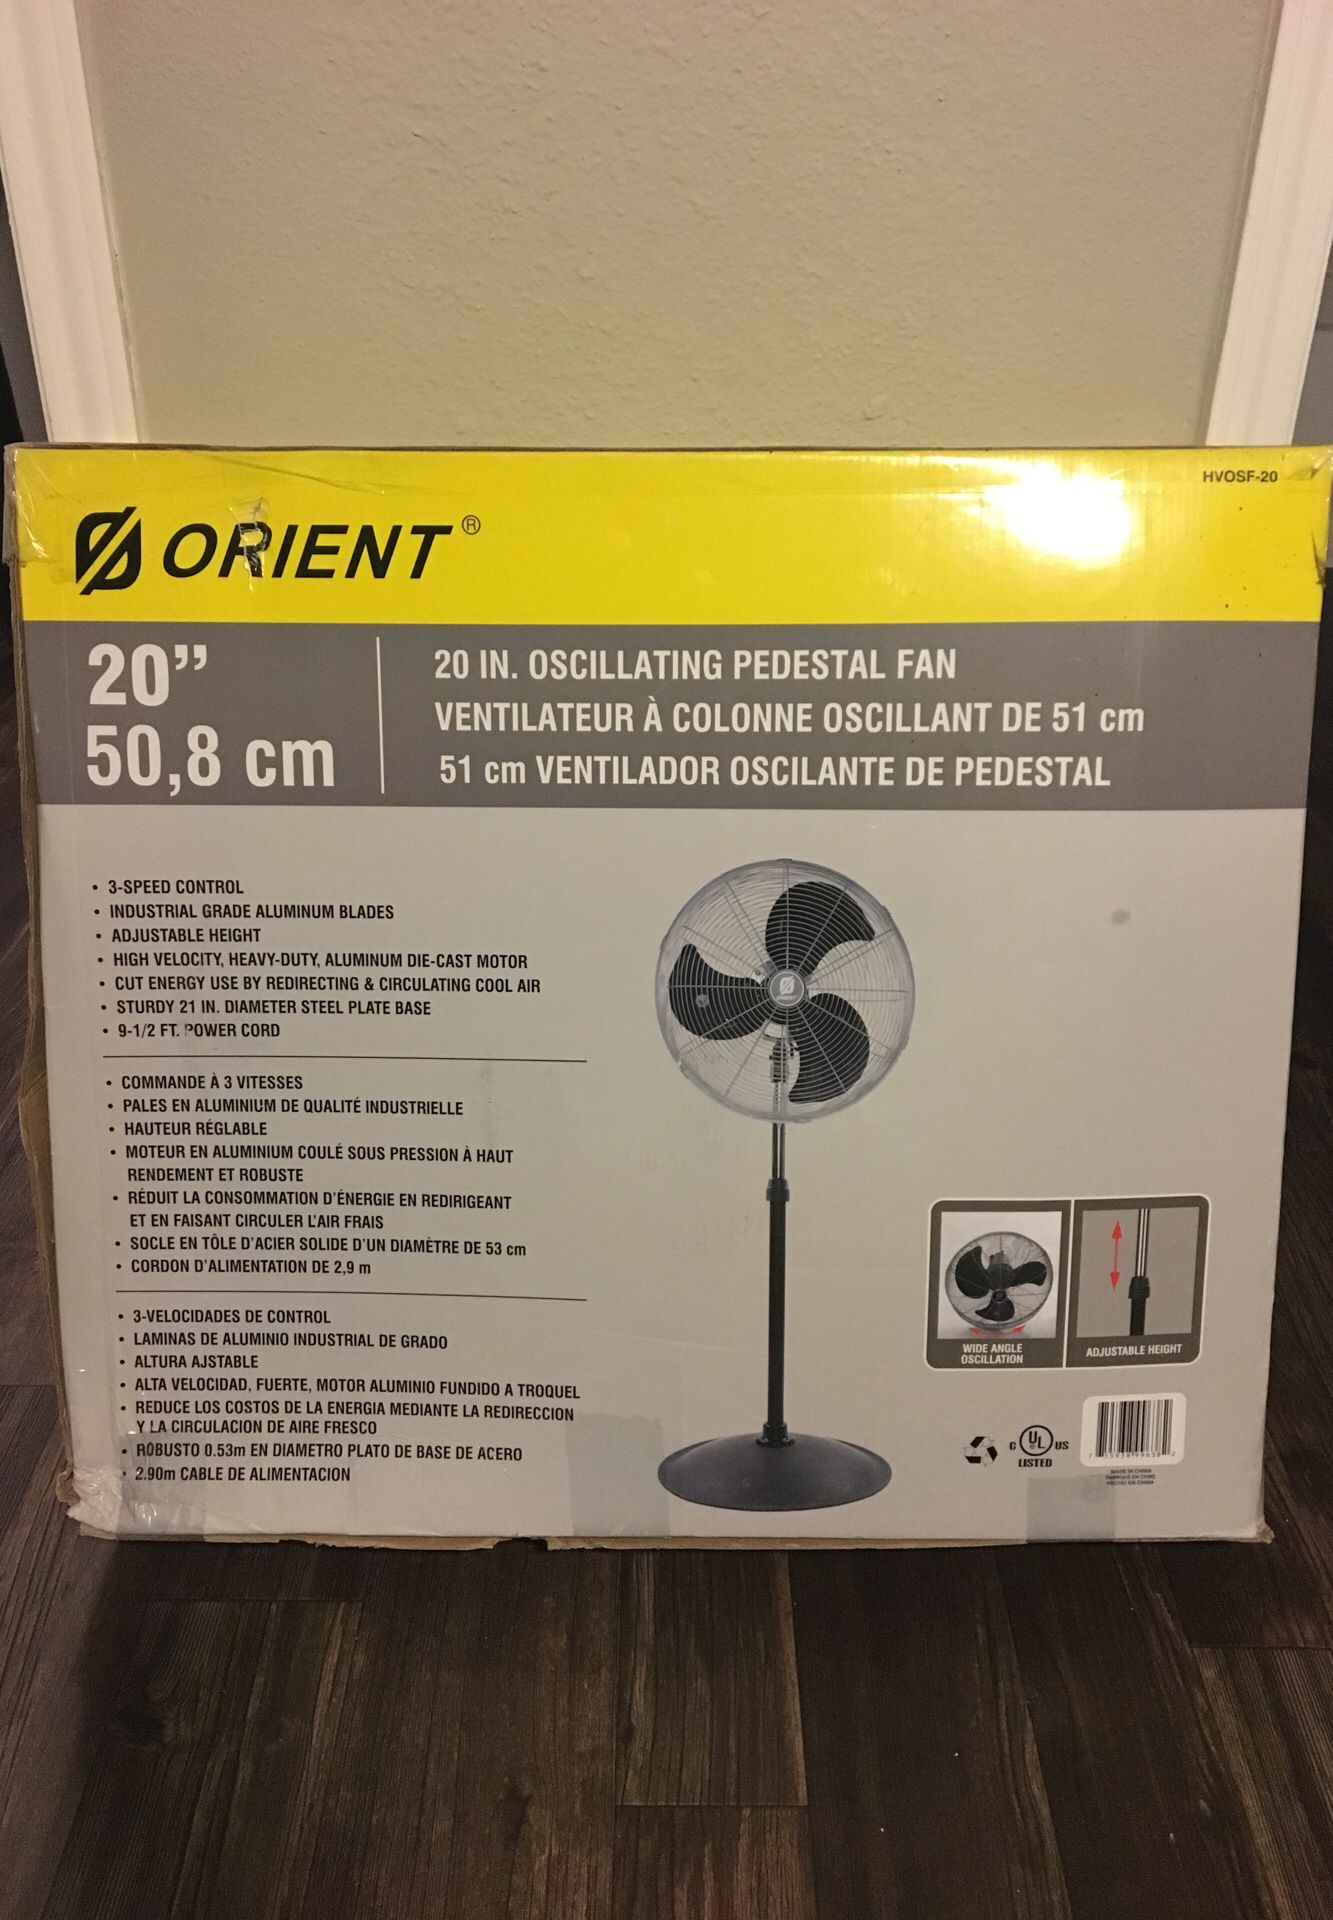 Orient 20” Oscillating Pedestal Fan